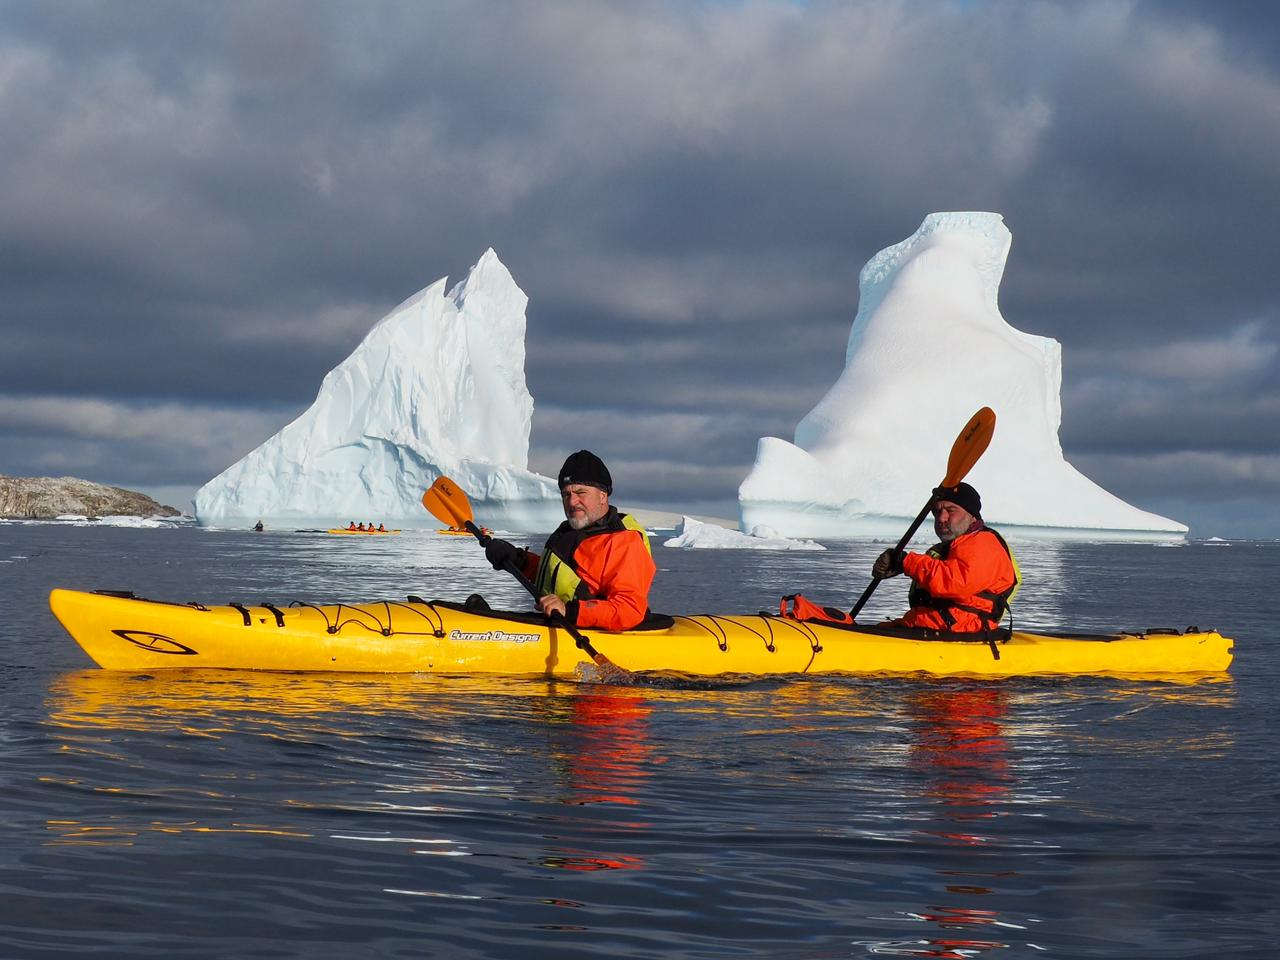 Durante el paseo en kayak en la Antártida: "El mar helado y sus témpanos flotantes, que se desplazan lentamente en su danza, son un espectáculo impresionante, que cautiva a la vista y al alma", reflexiona Jean Maggi